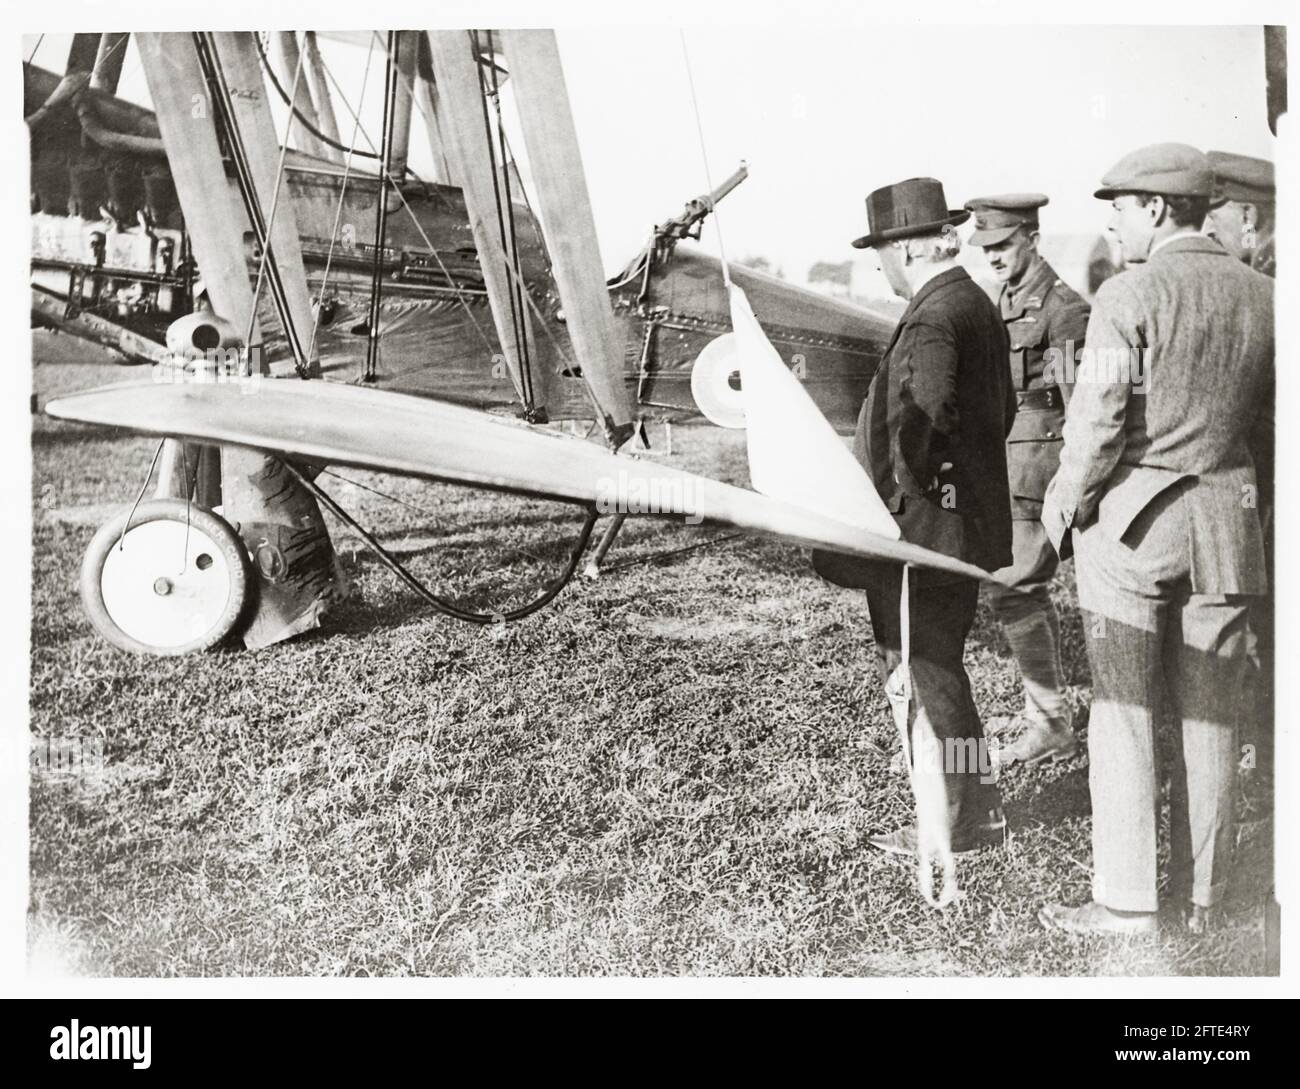 Première Guerre mondiale, première Guerre mondiale, front de l'Ouest - le Premier ministre britannique Herbert Asquith inspecte un avion criblé de balles qui vient de rentrer d'un vol Banque D'Images